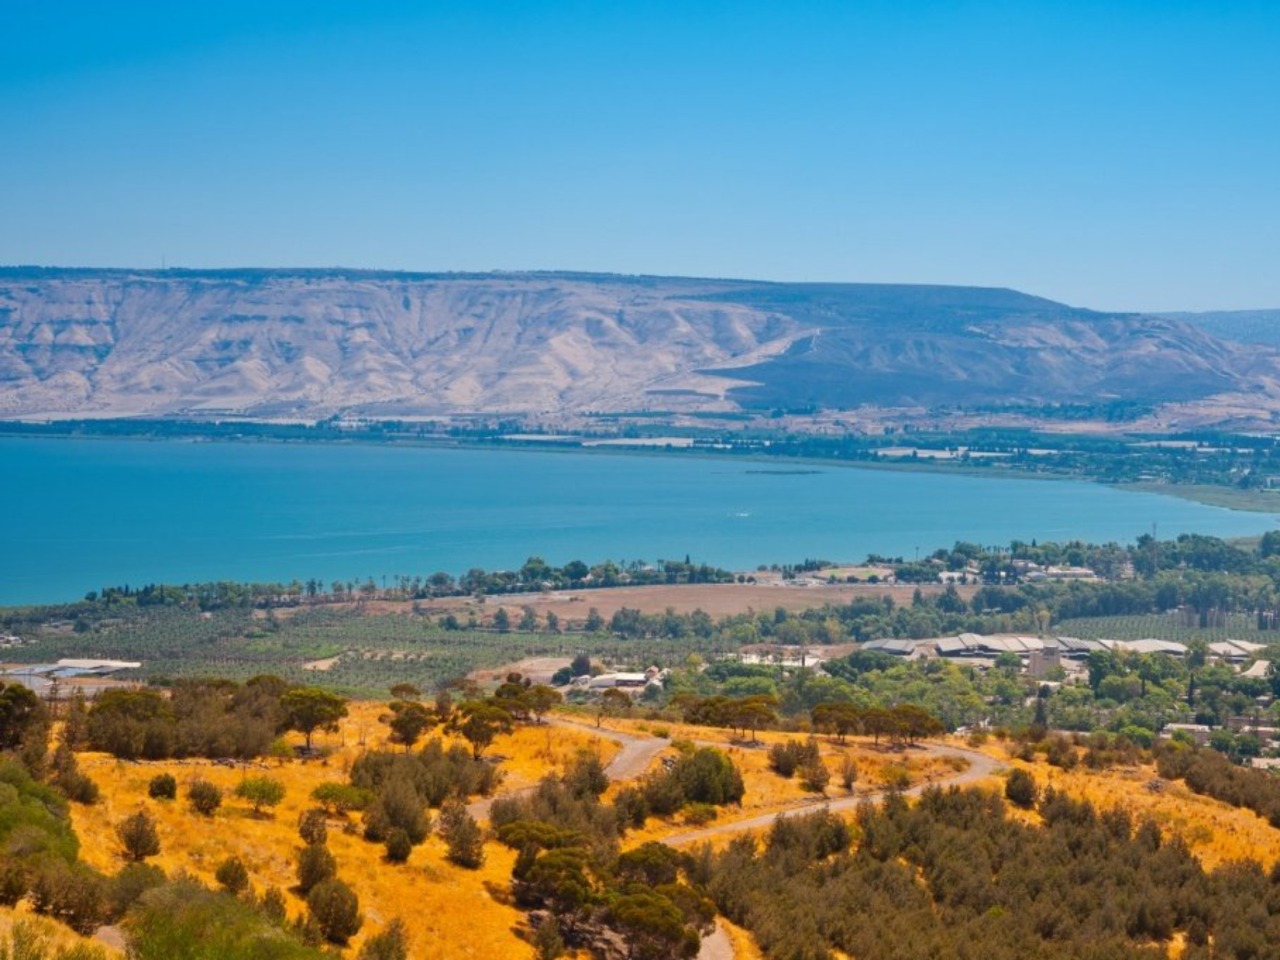 Чудеса вокруг Галилейского моря | Цена 800€, отзывы, описание экскурсии